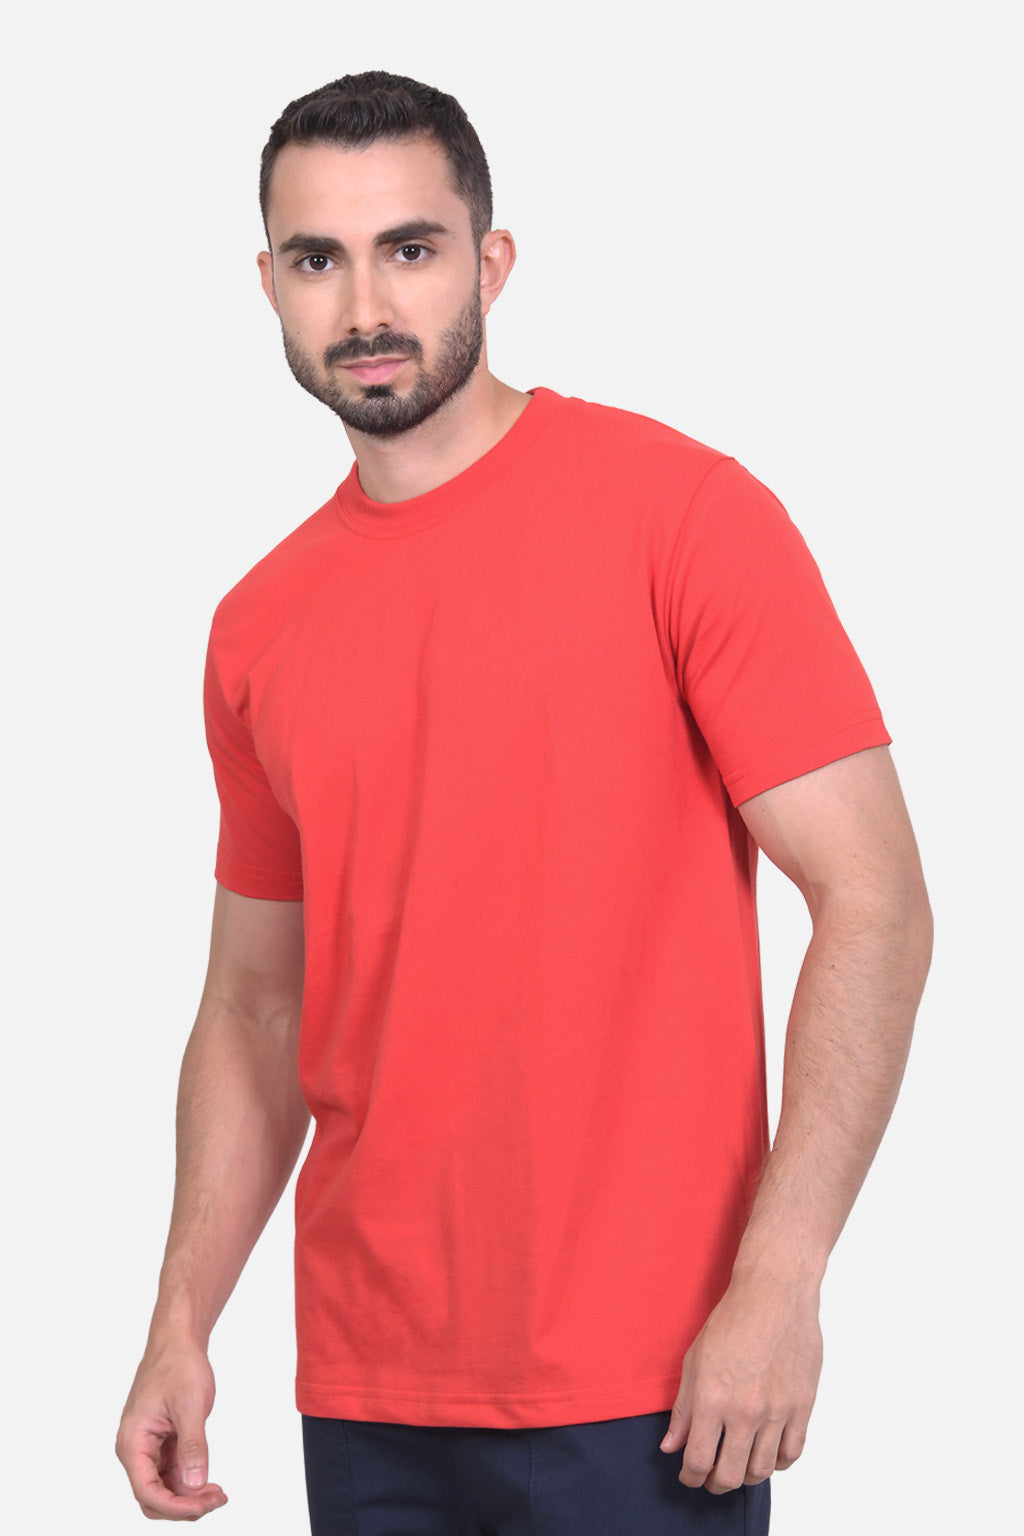 Camiseta Hombre Roja 